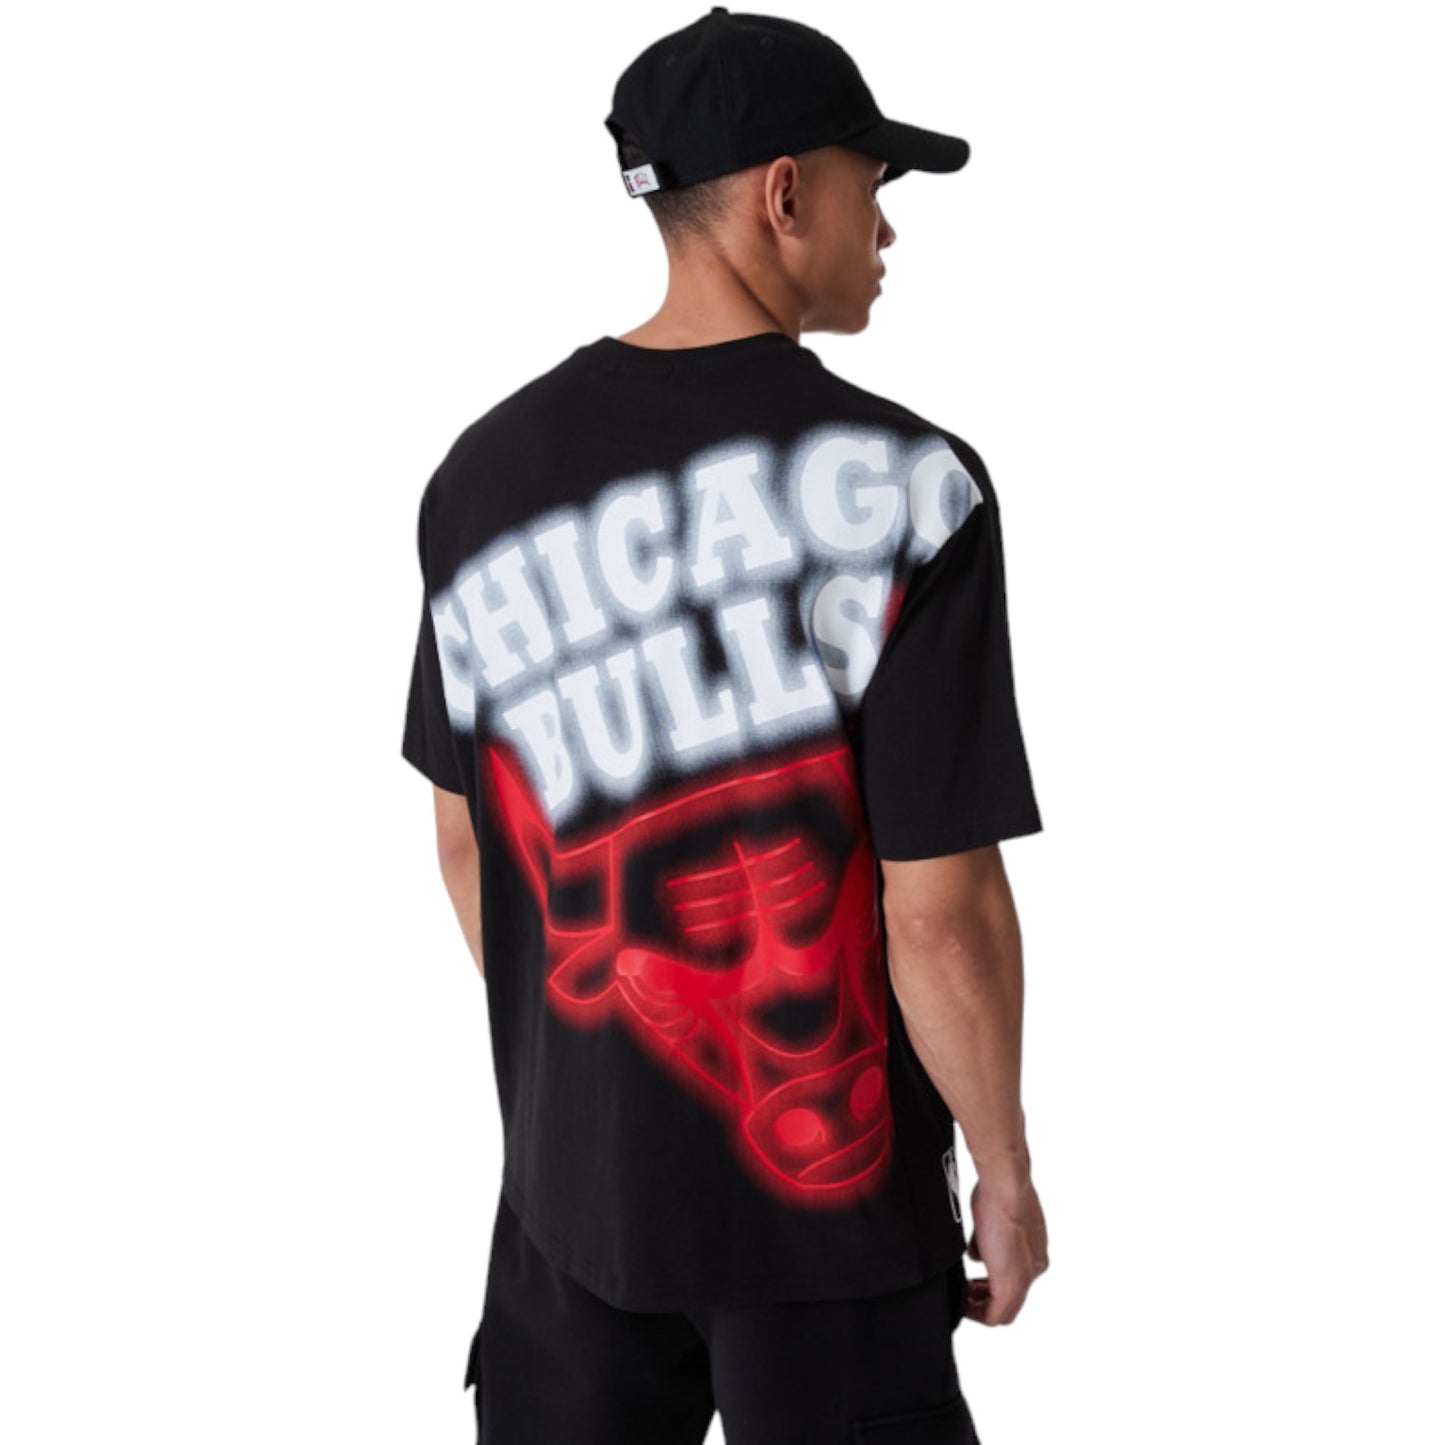 Team Logo T-shirt Oversized Chicago Bulls NBA Black Neon